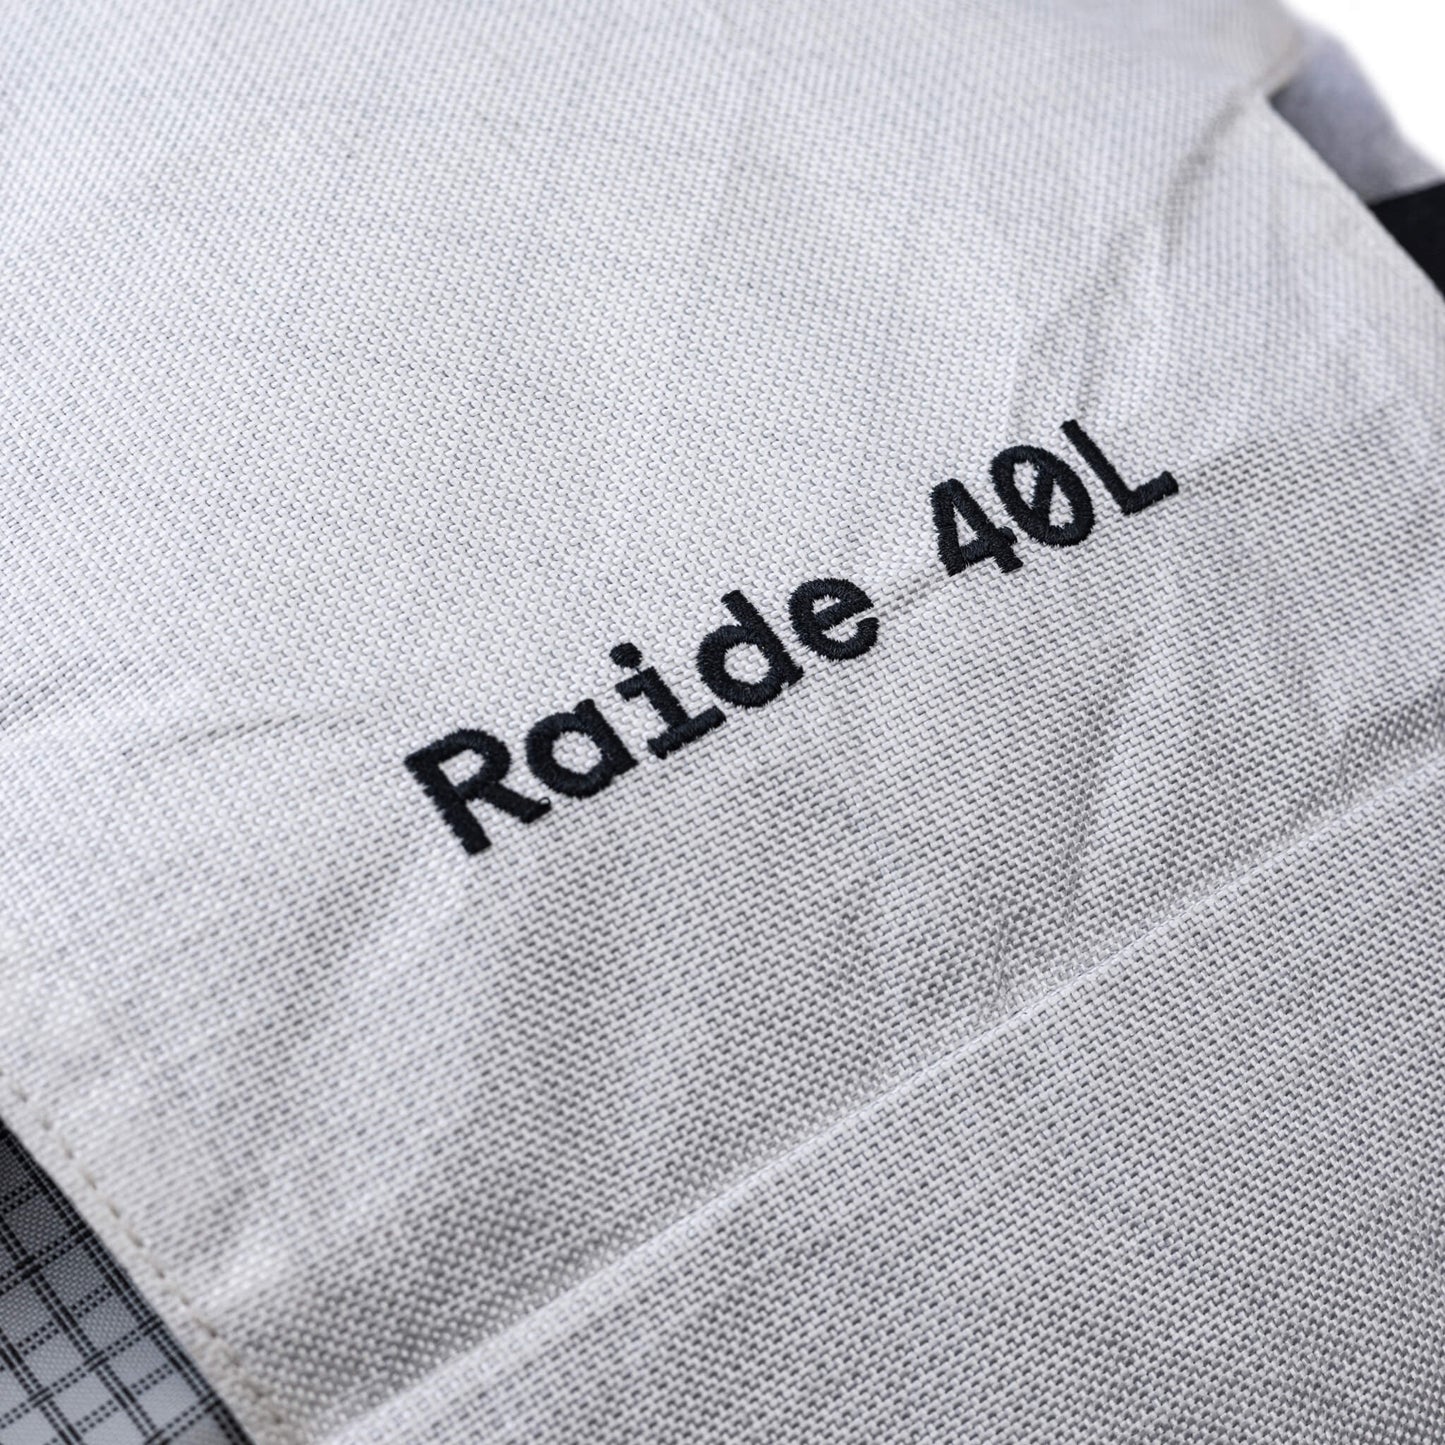 Raide LF 40L - White